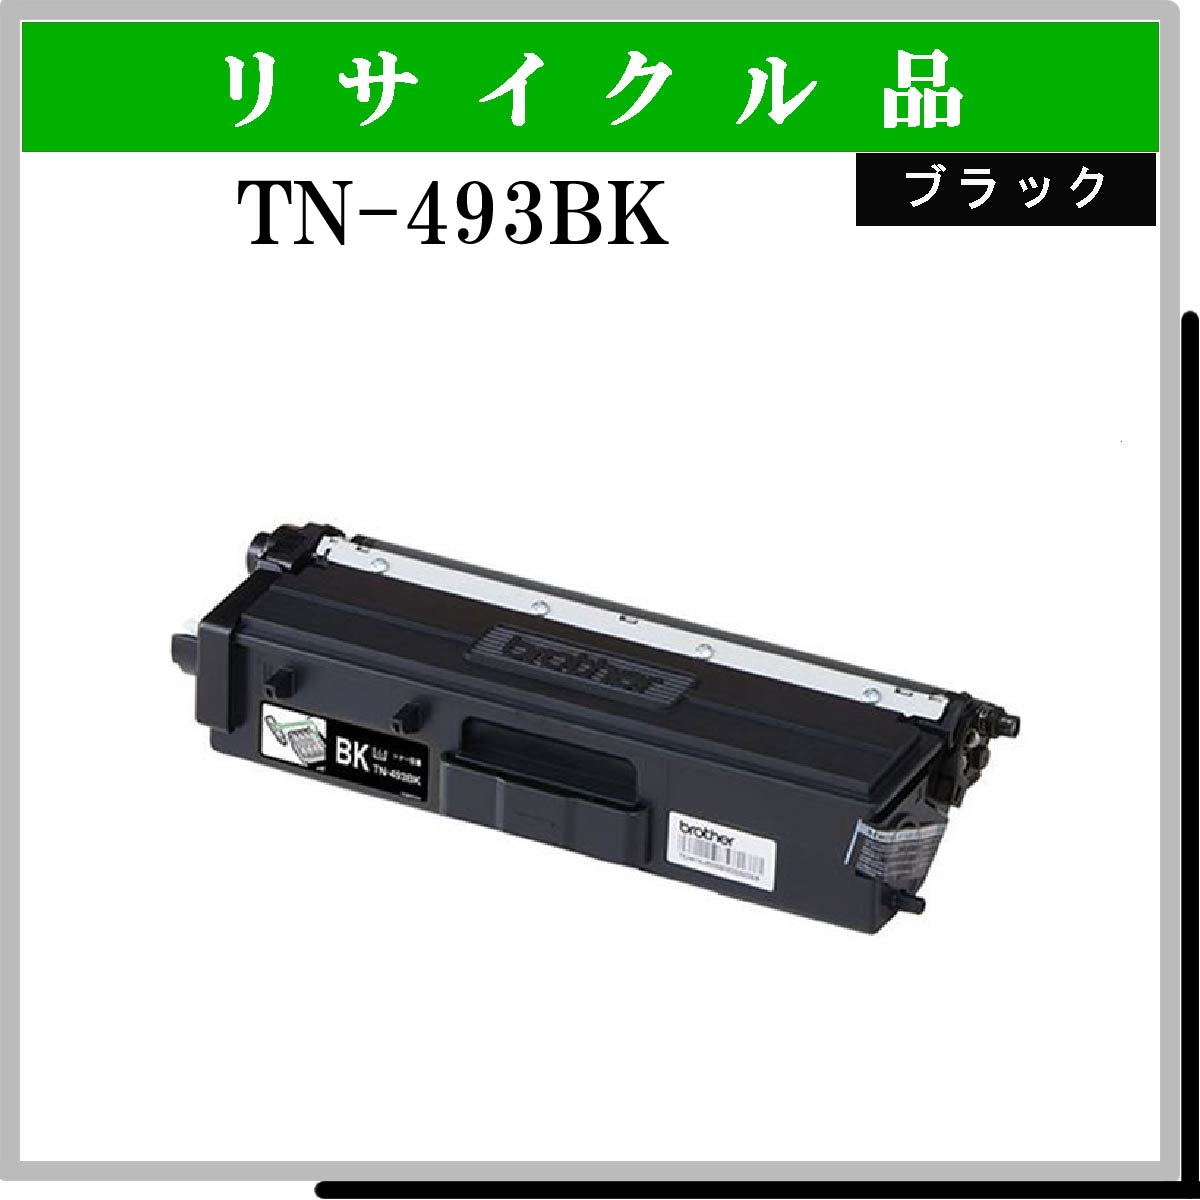 TN-493BK